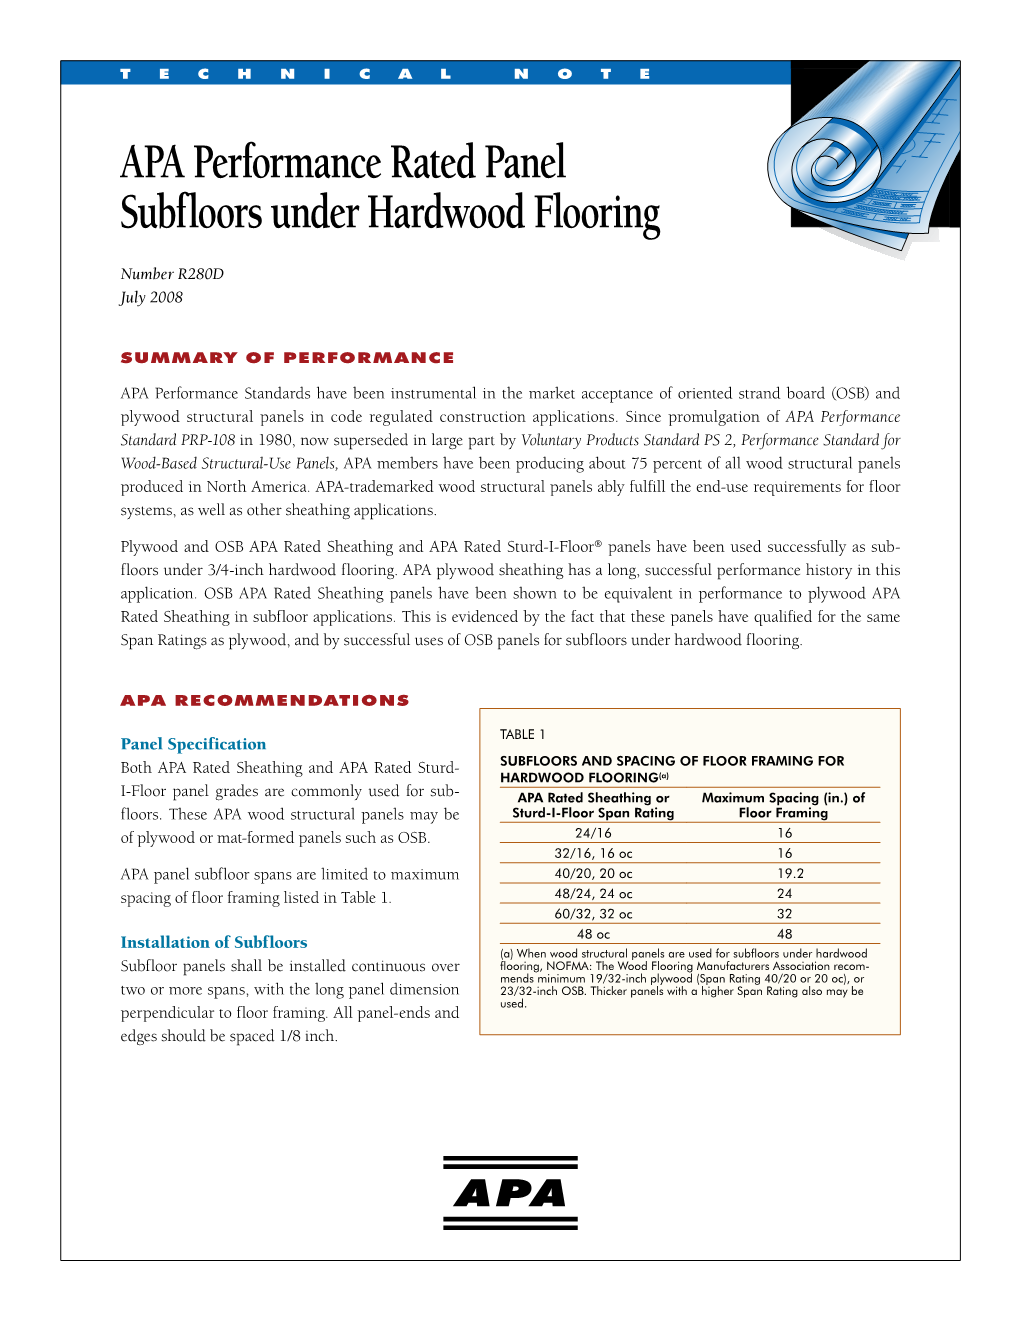 APA Performance Rated Panel Subfloors Under Hardwood Flooring